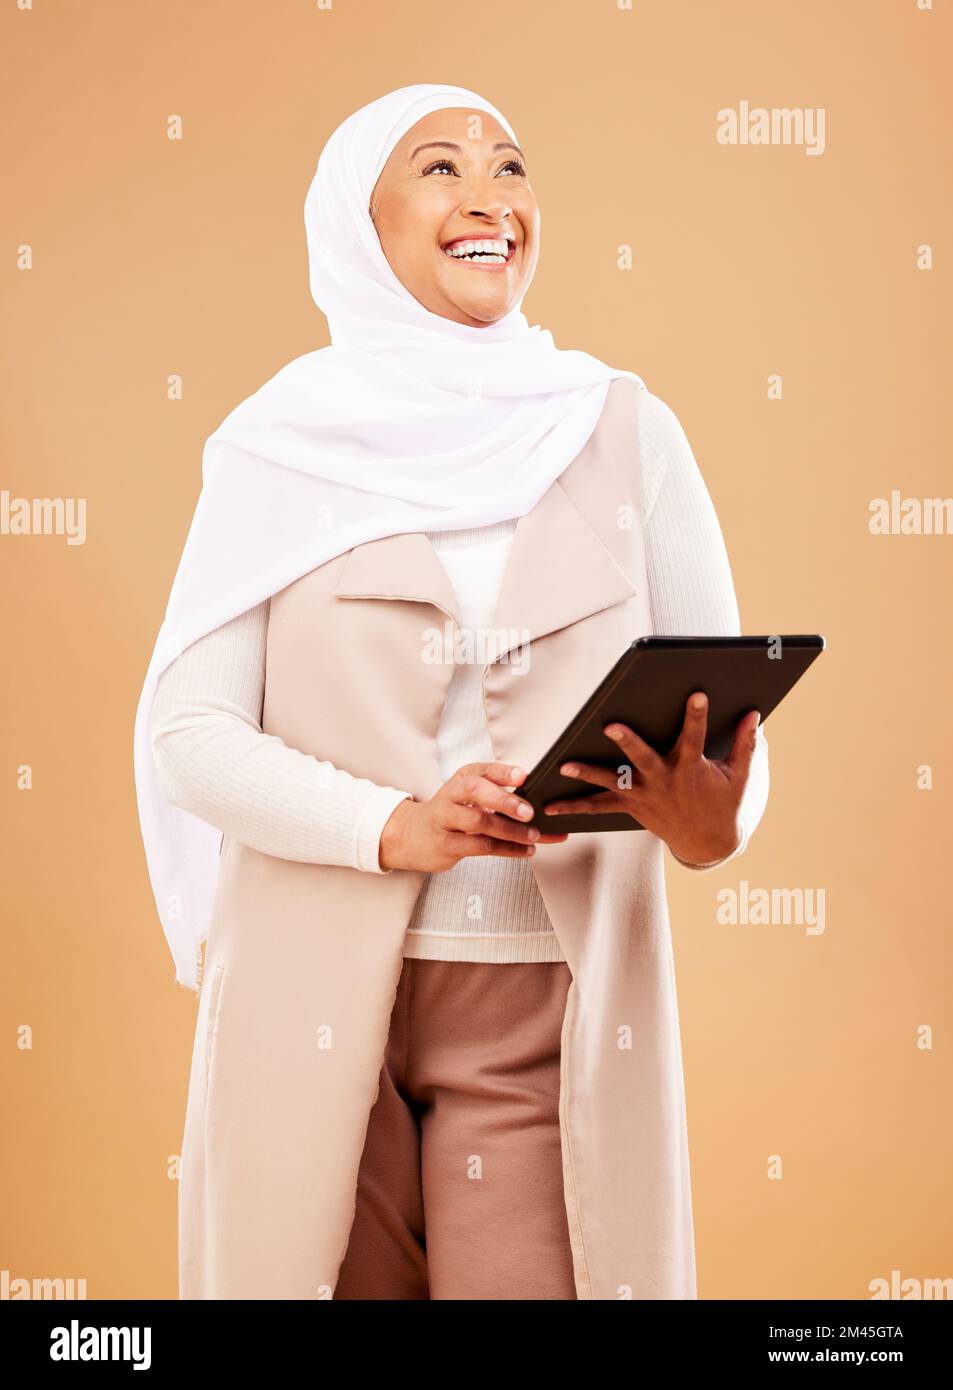 Musulmane, mode et tablette de femme en studio pour le marketing de conception, la publicité et les médias sociaux dans les affaires de démarrage, carrière ou culture d'employé Banque D'Images